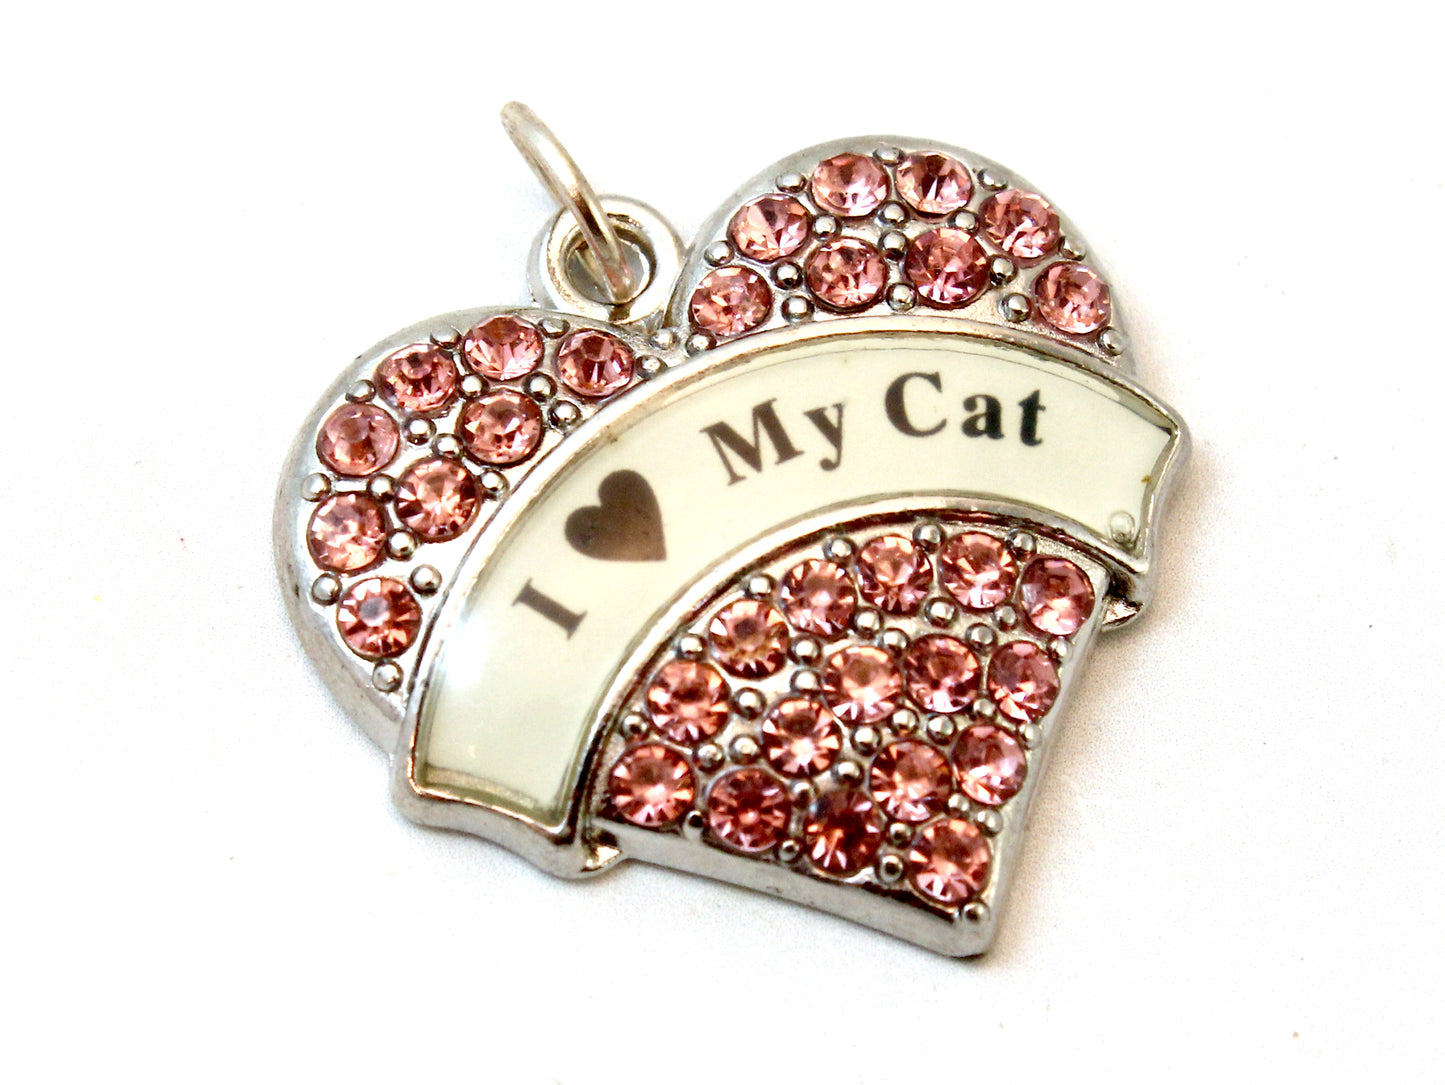 'I 'Heart' My Cat' Heart Pendant